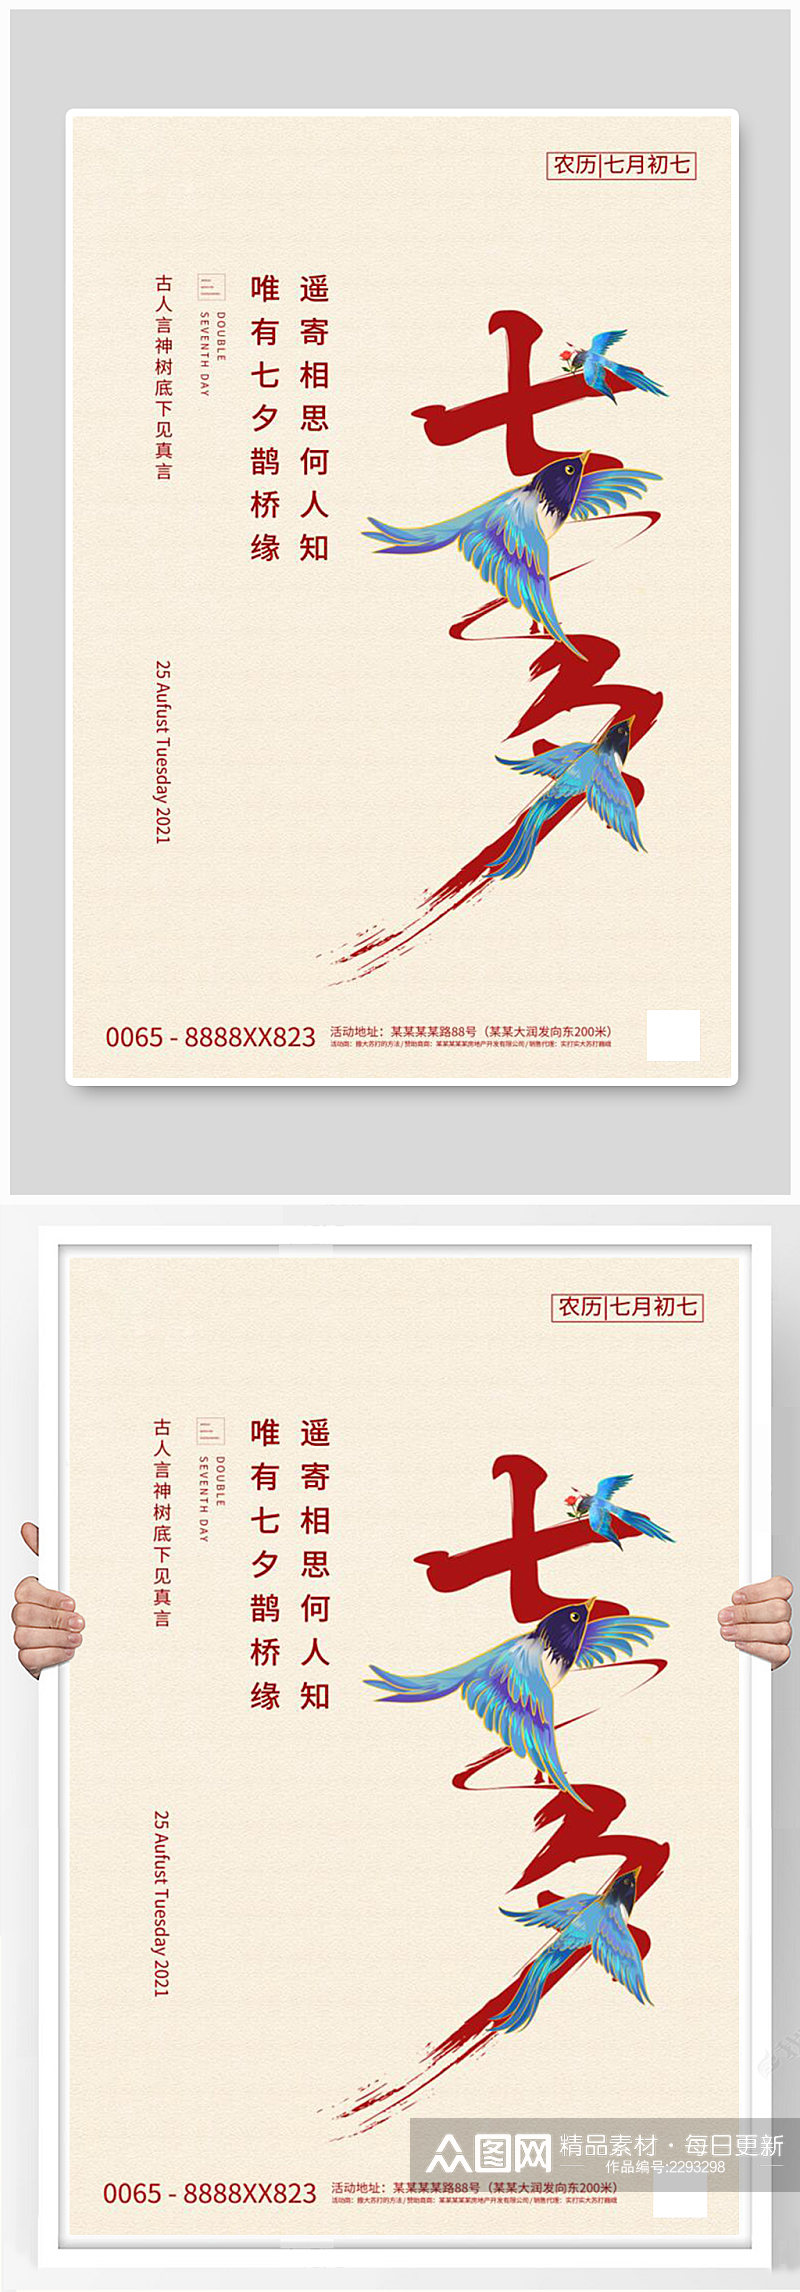 七夕节喜鹊红色创意简洁海报素材